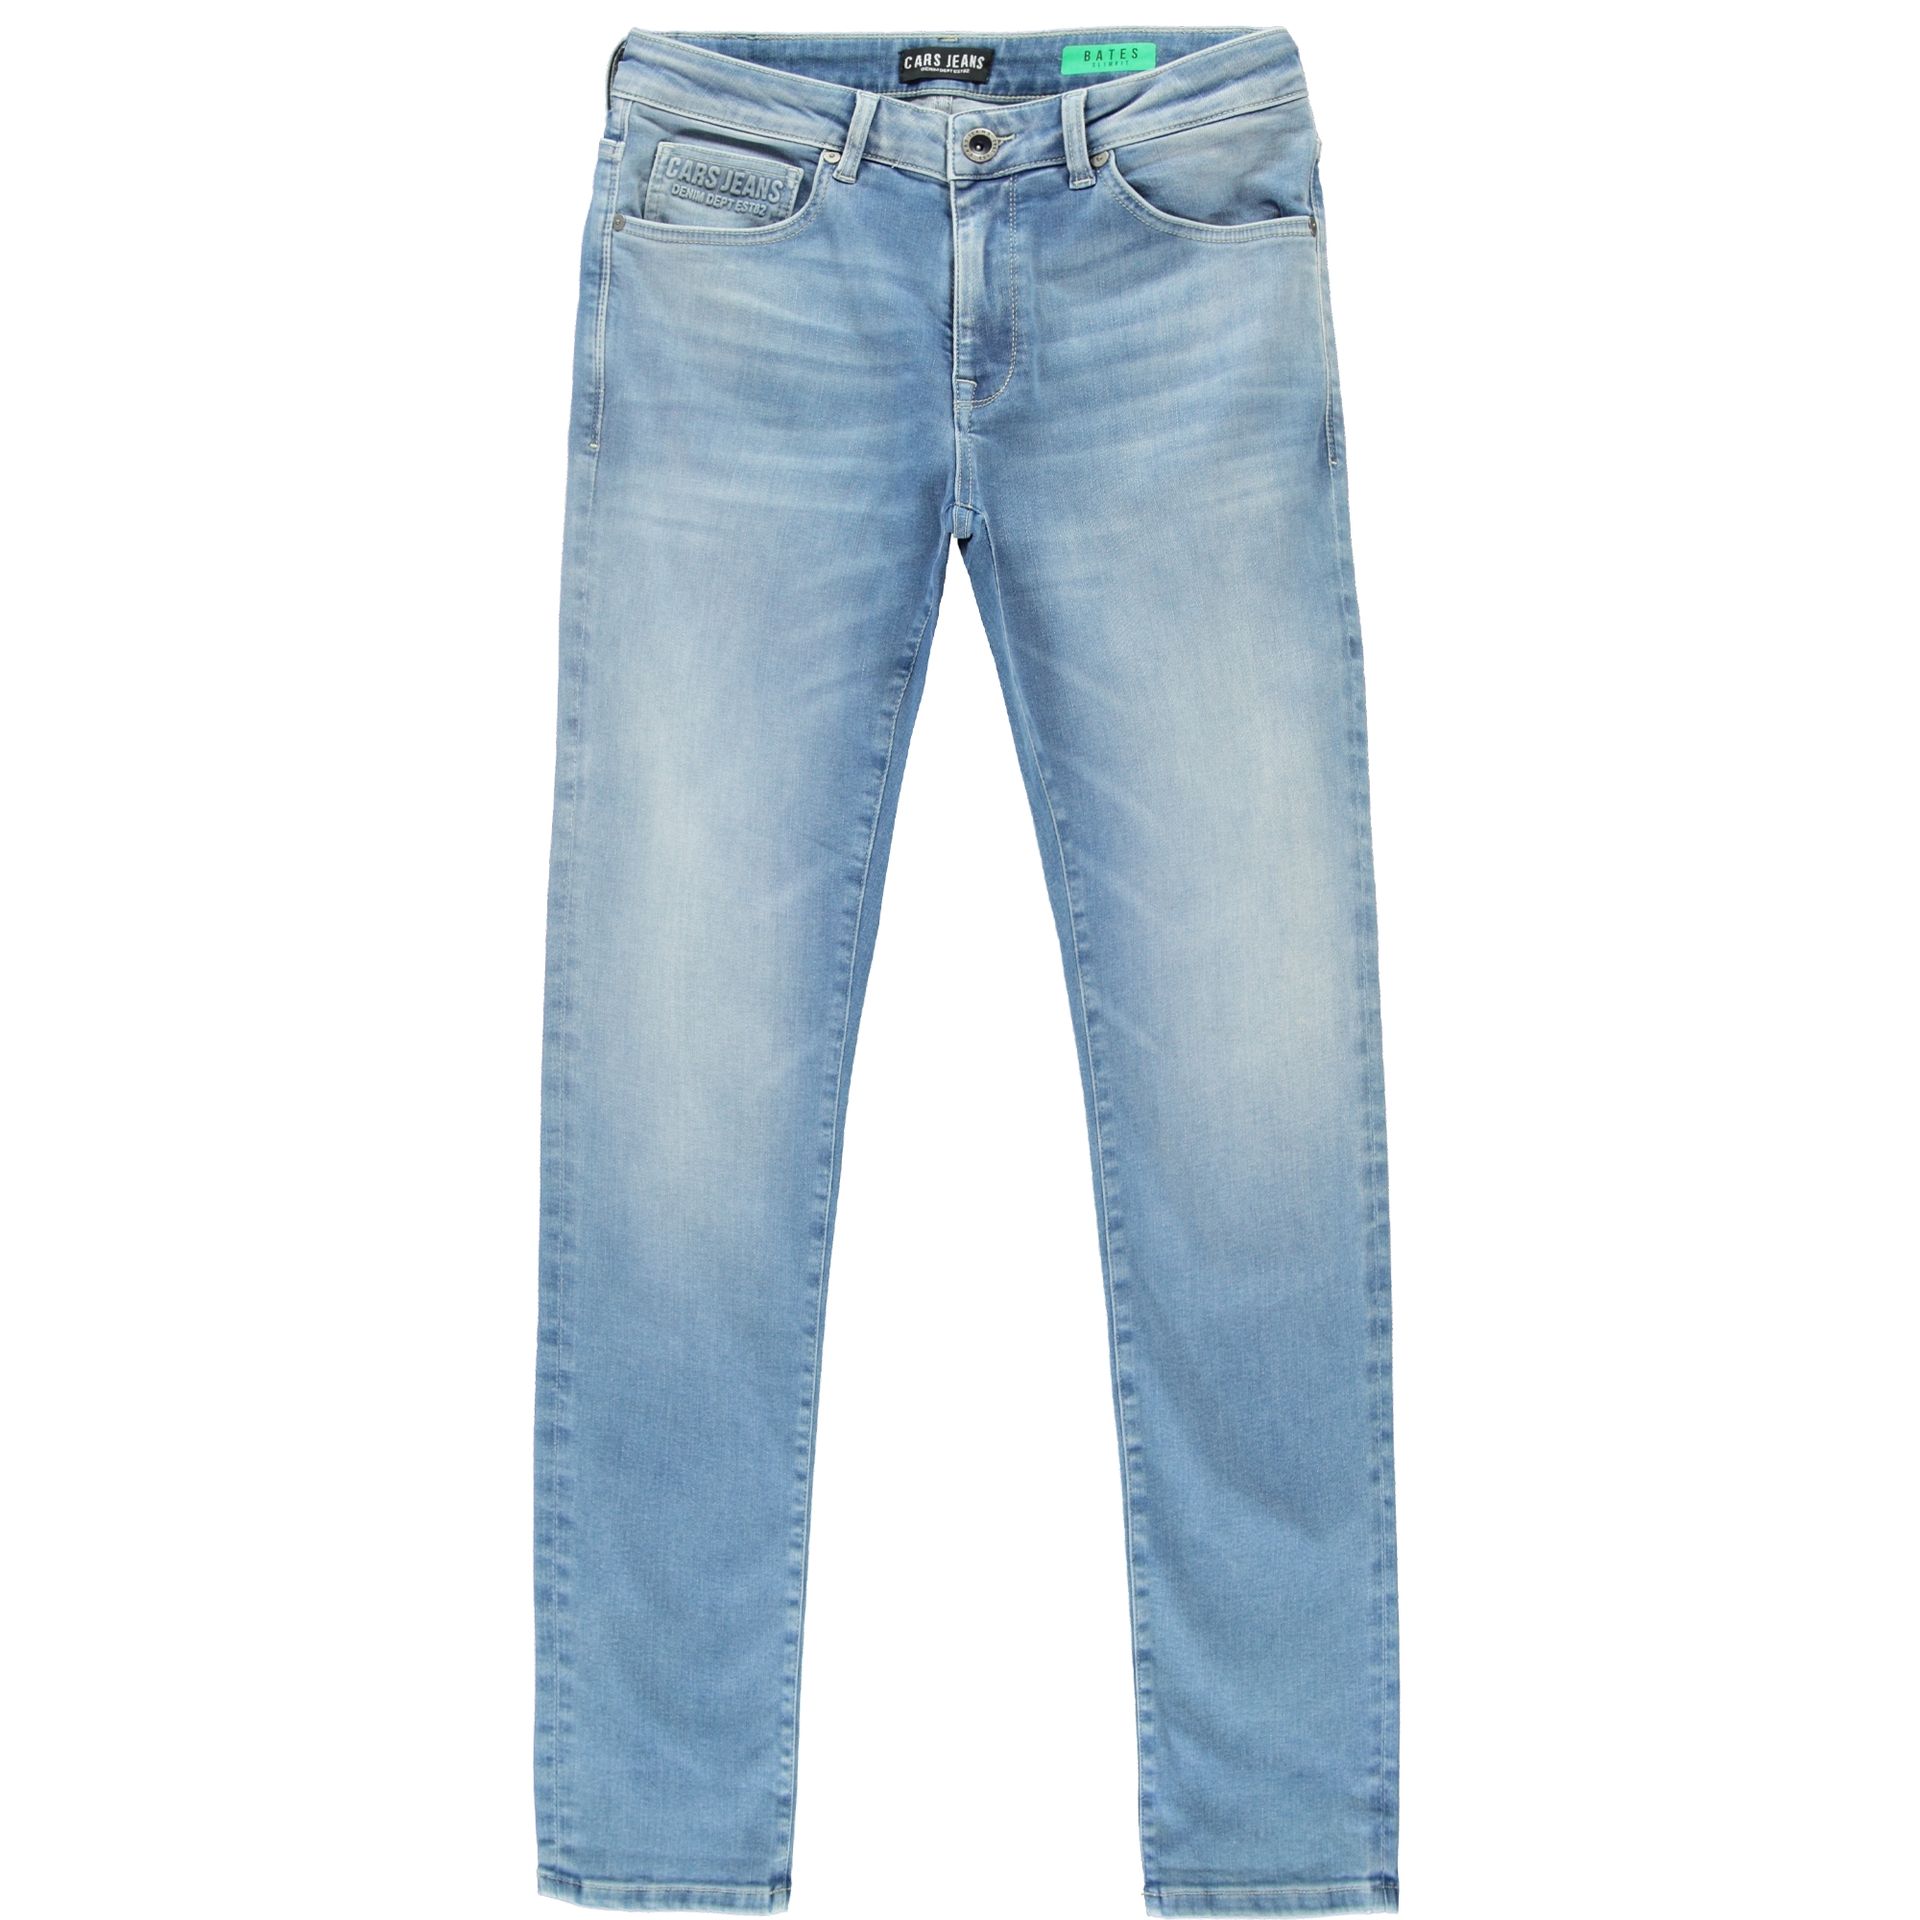 Cars jeans Jeans Bates Slim fit 95 porto wash 2900147113688